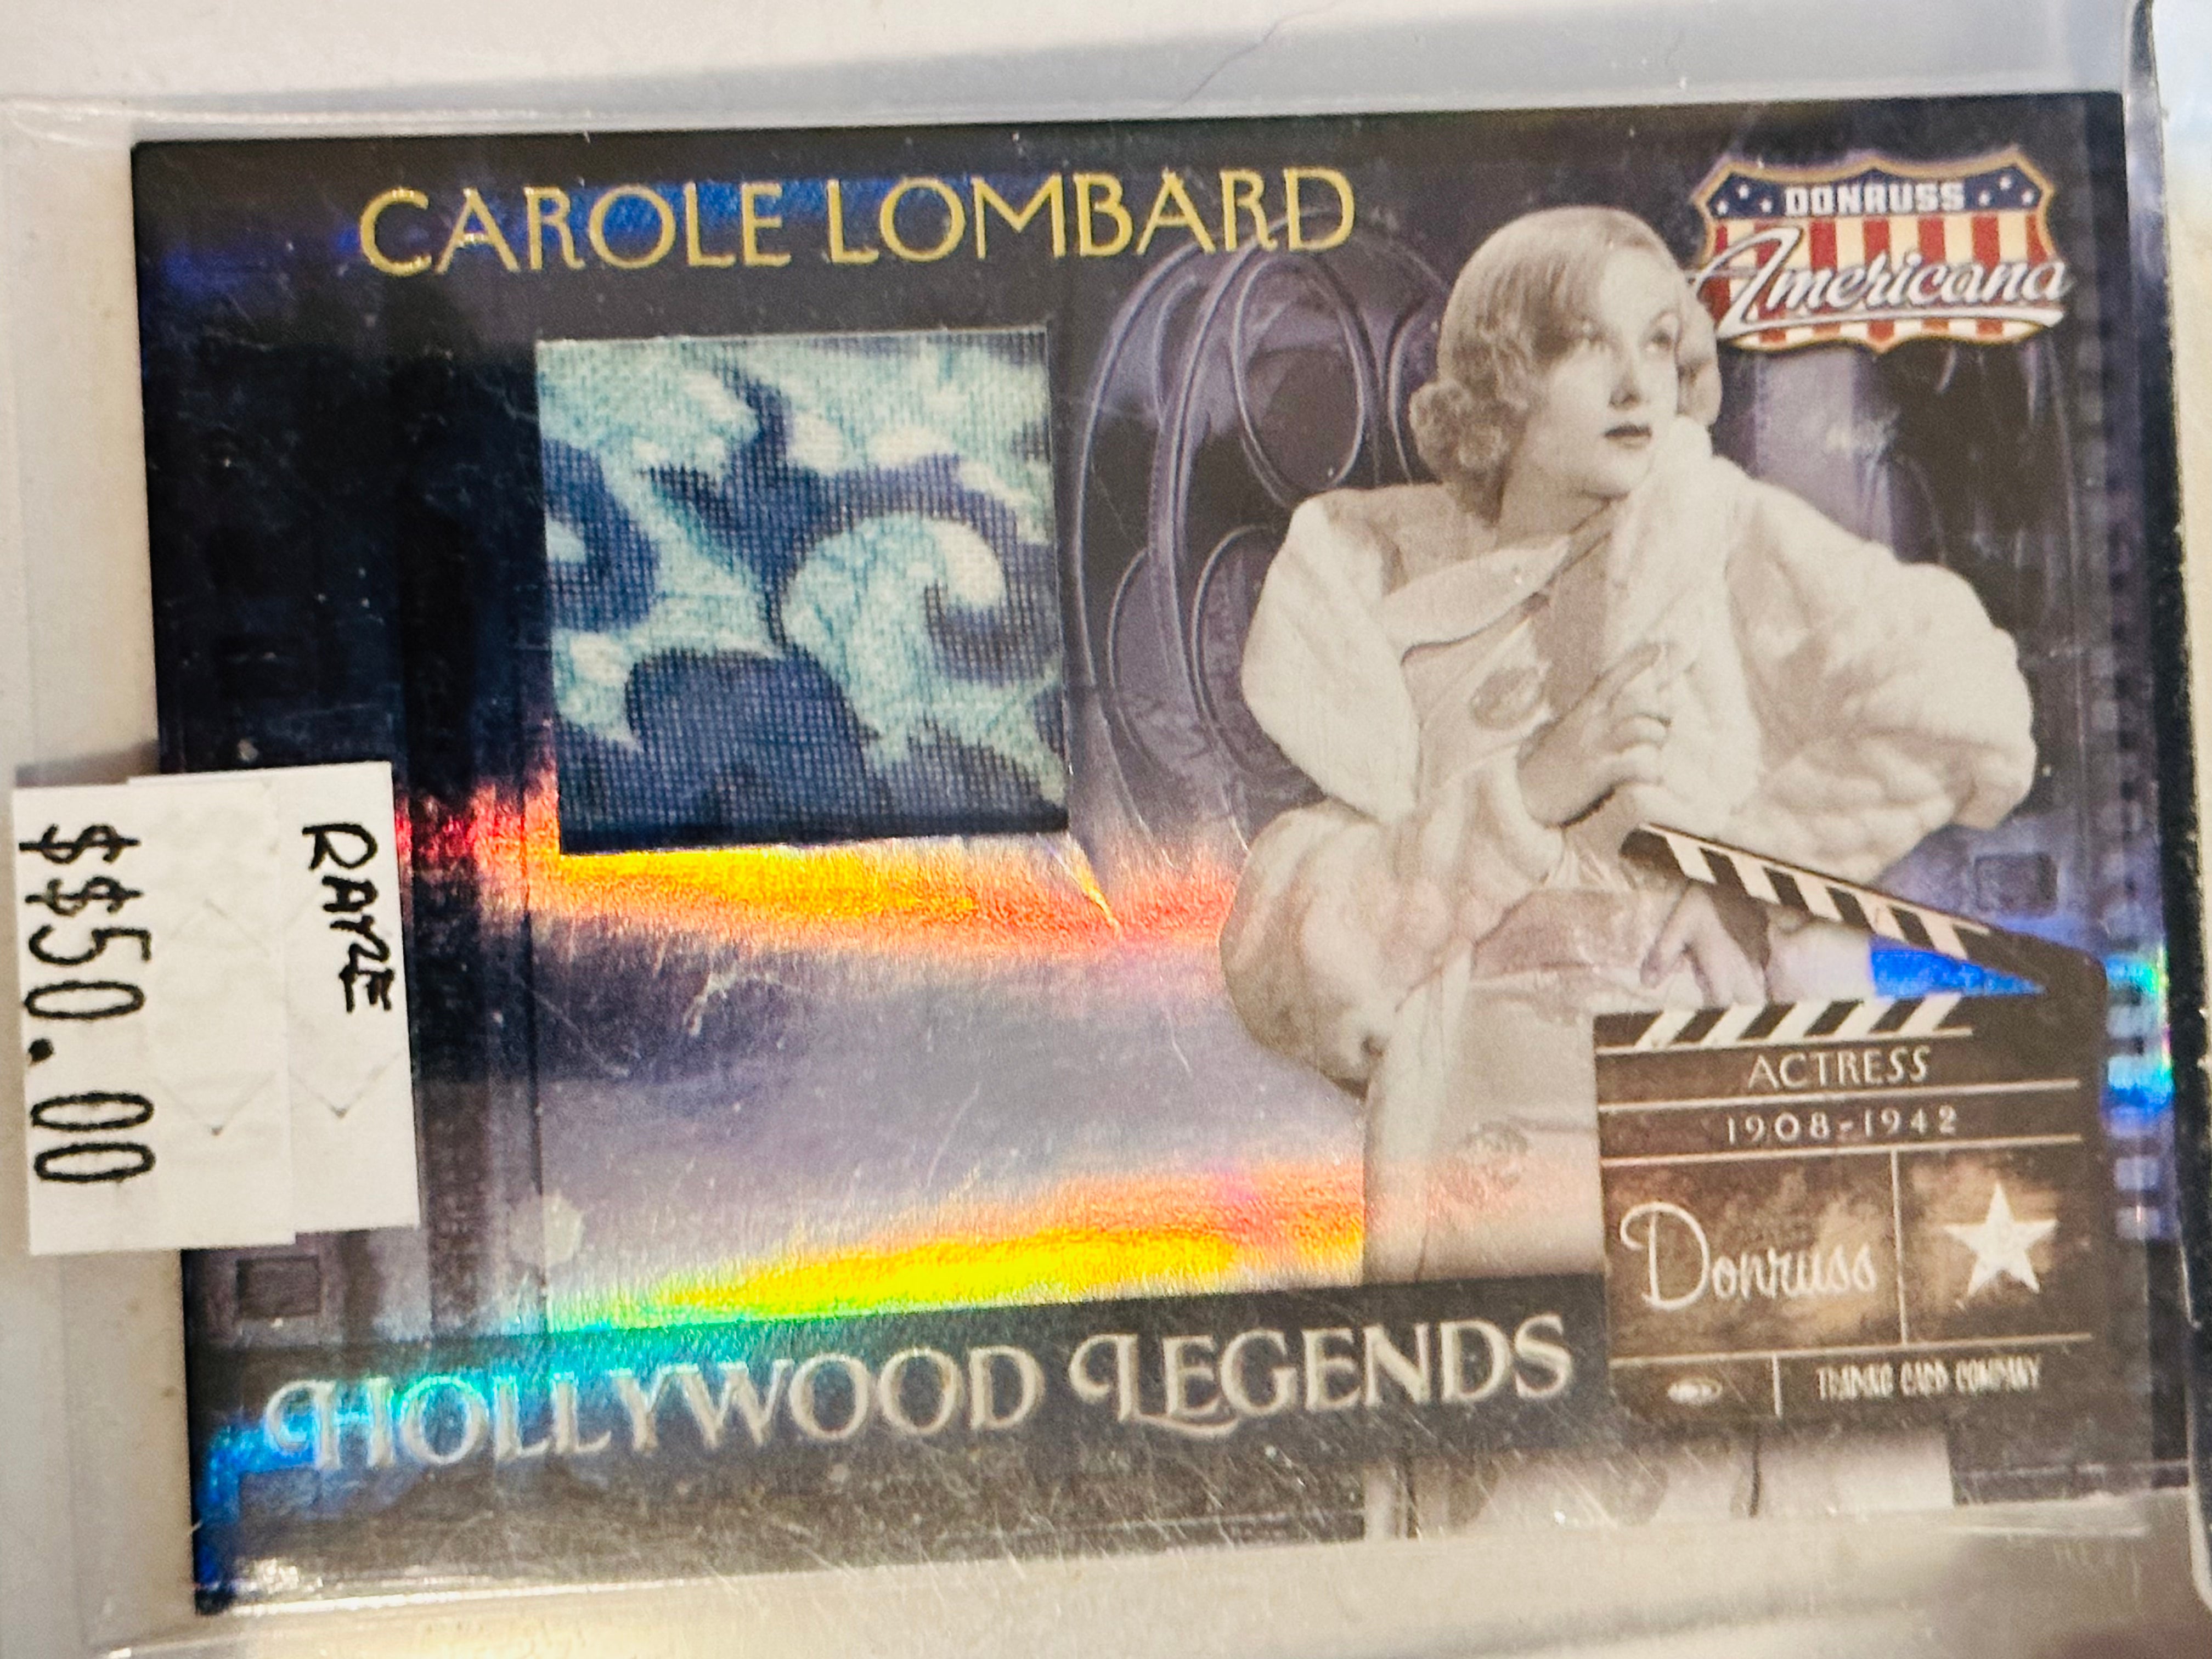 Carole Lombard rare movie memorabilia insert card Beckett graded